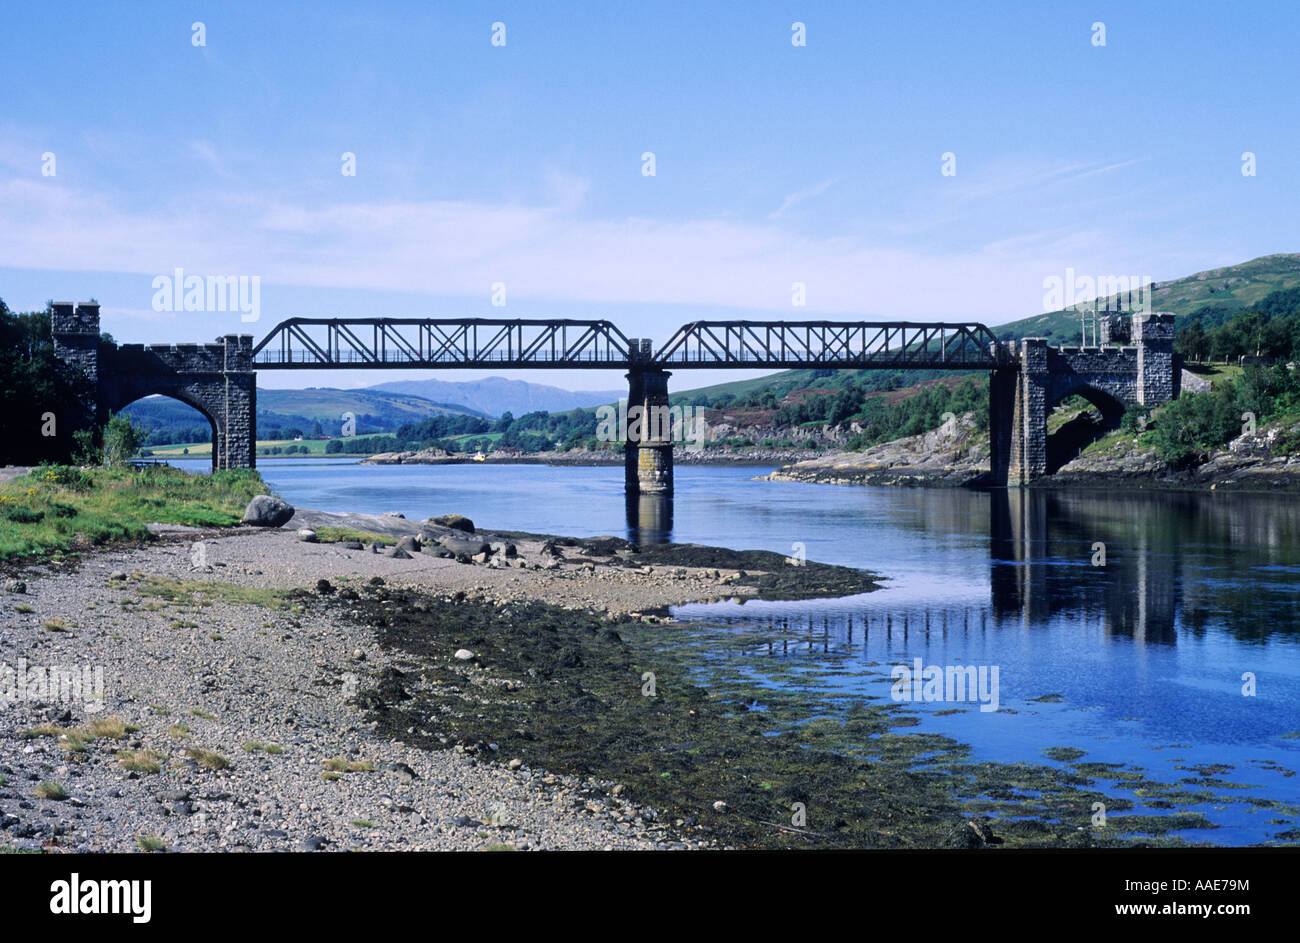 Loch Creran, désaffectées victorien redondants pont de chemin de fer, à l'ouest, dans l'ouest de l'Ecosse, Royaume-Uni, Stathclyde, Voyage, tourisme, transport Banque D'Images